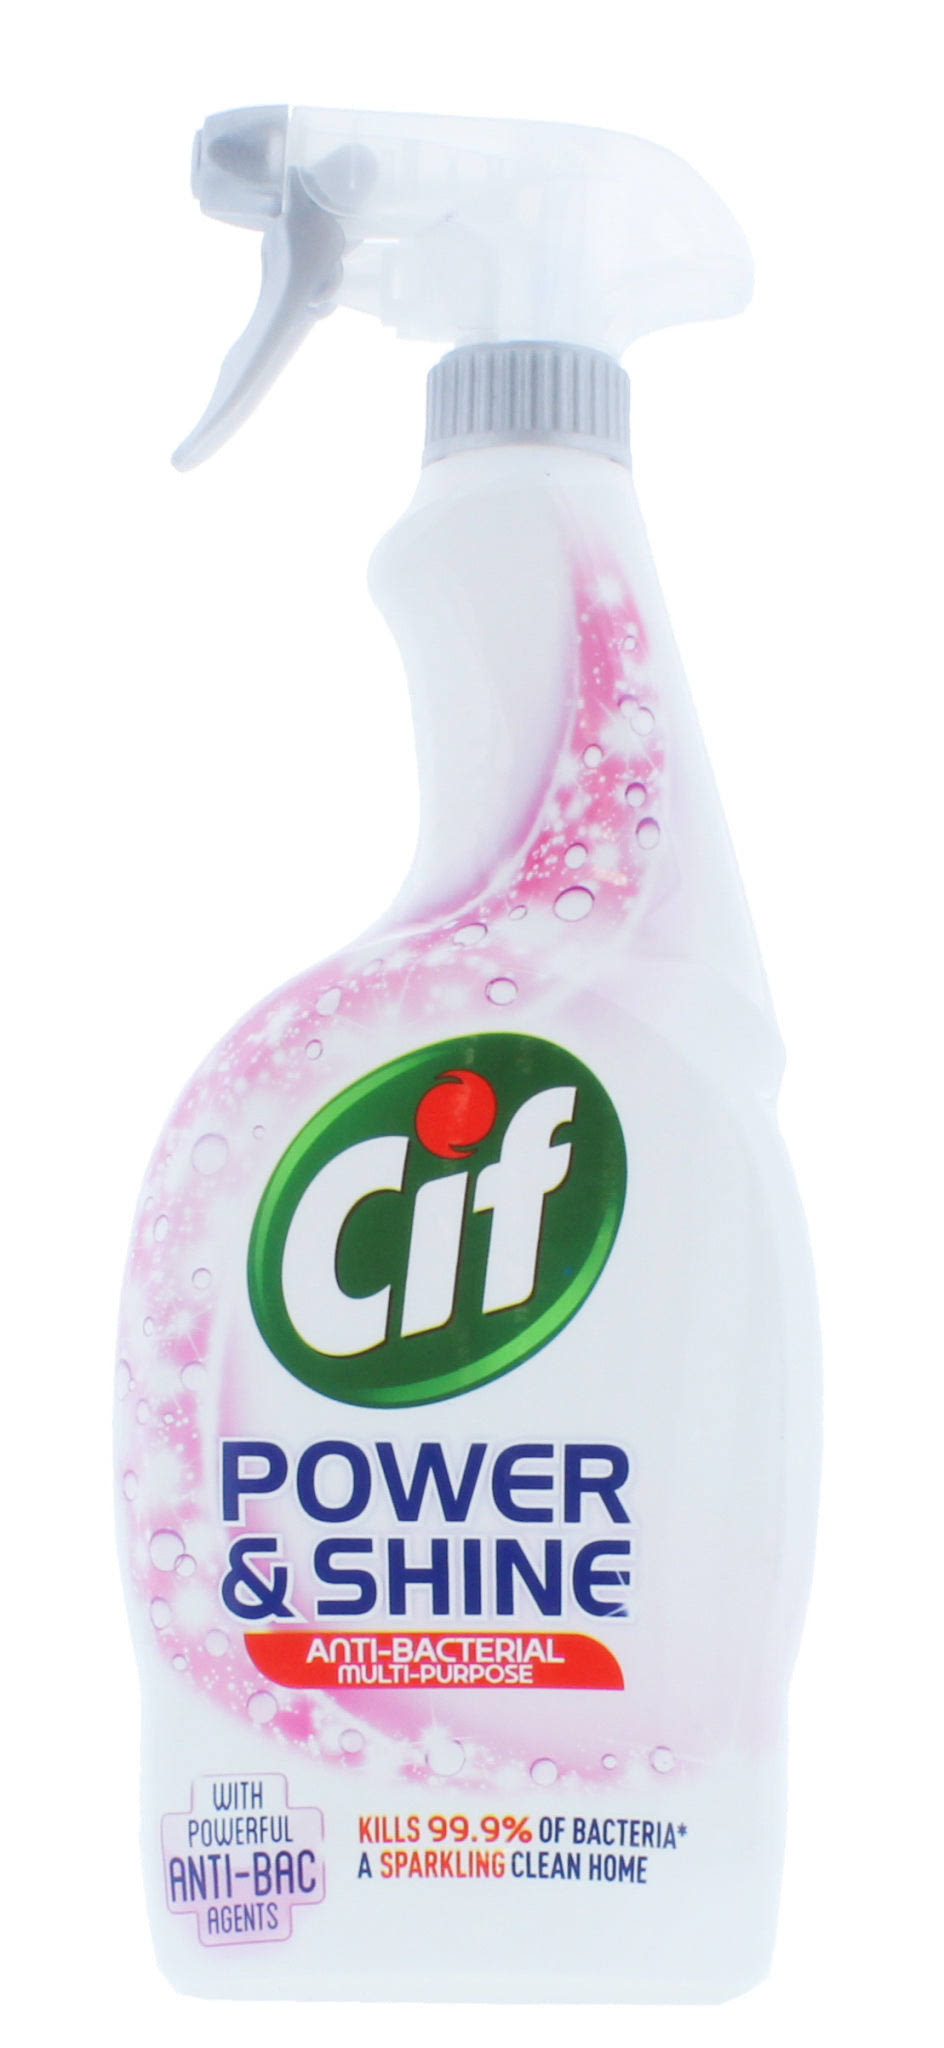 Cif Power and Shine Anti-bacterial Multi-Purpose Spray - 700ml